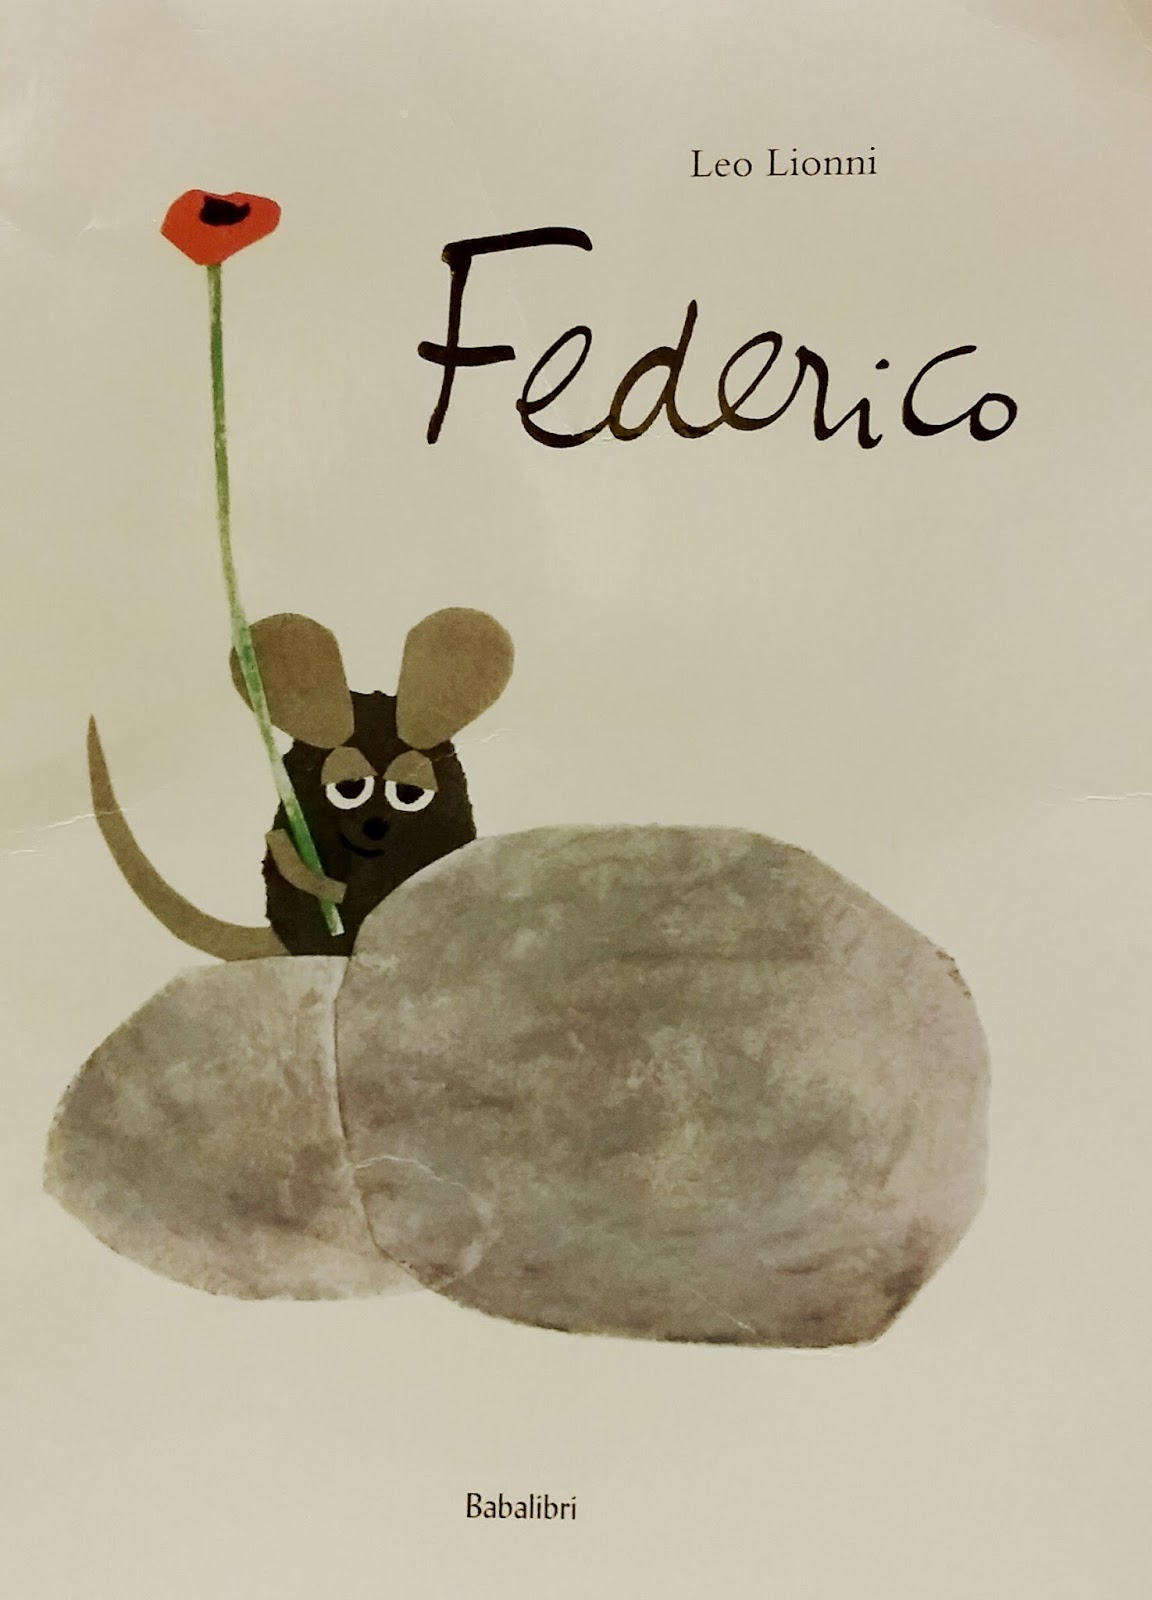 Famiglia tuttofare: Libri per bambini Federico di Leo Lionni